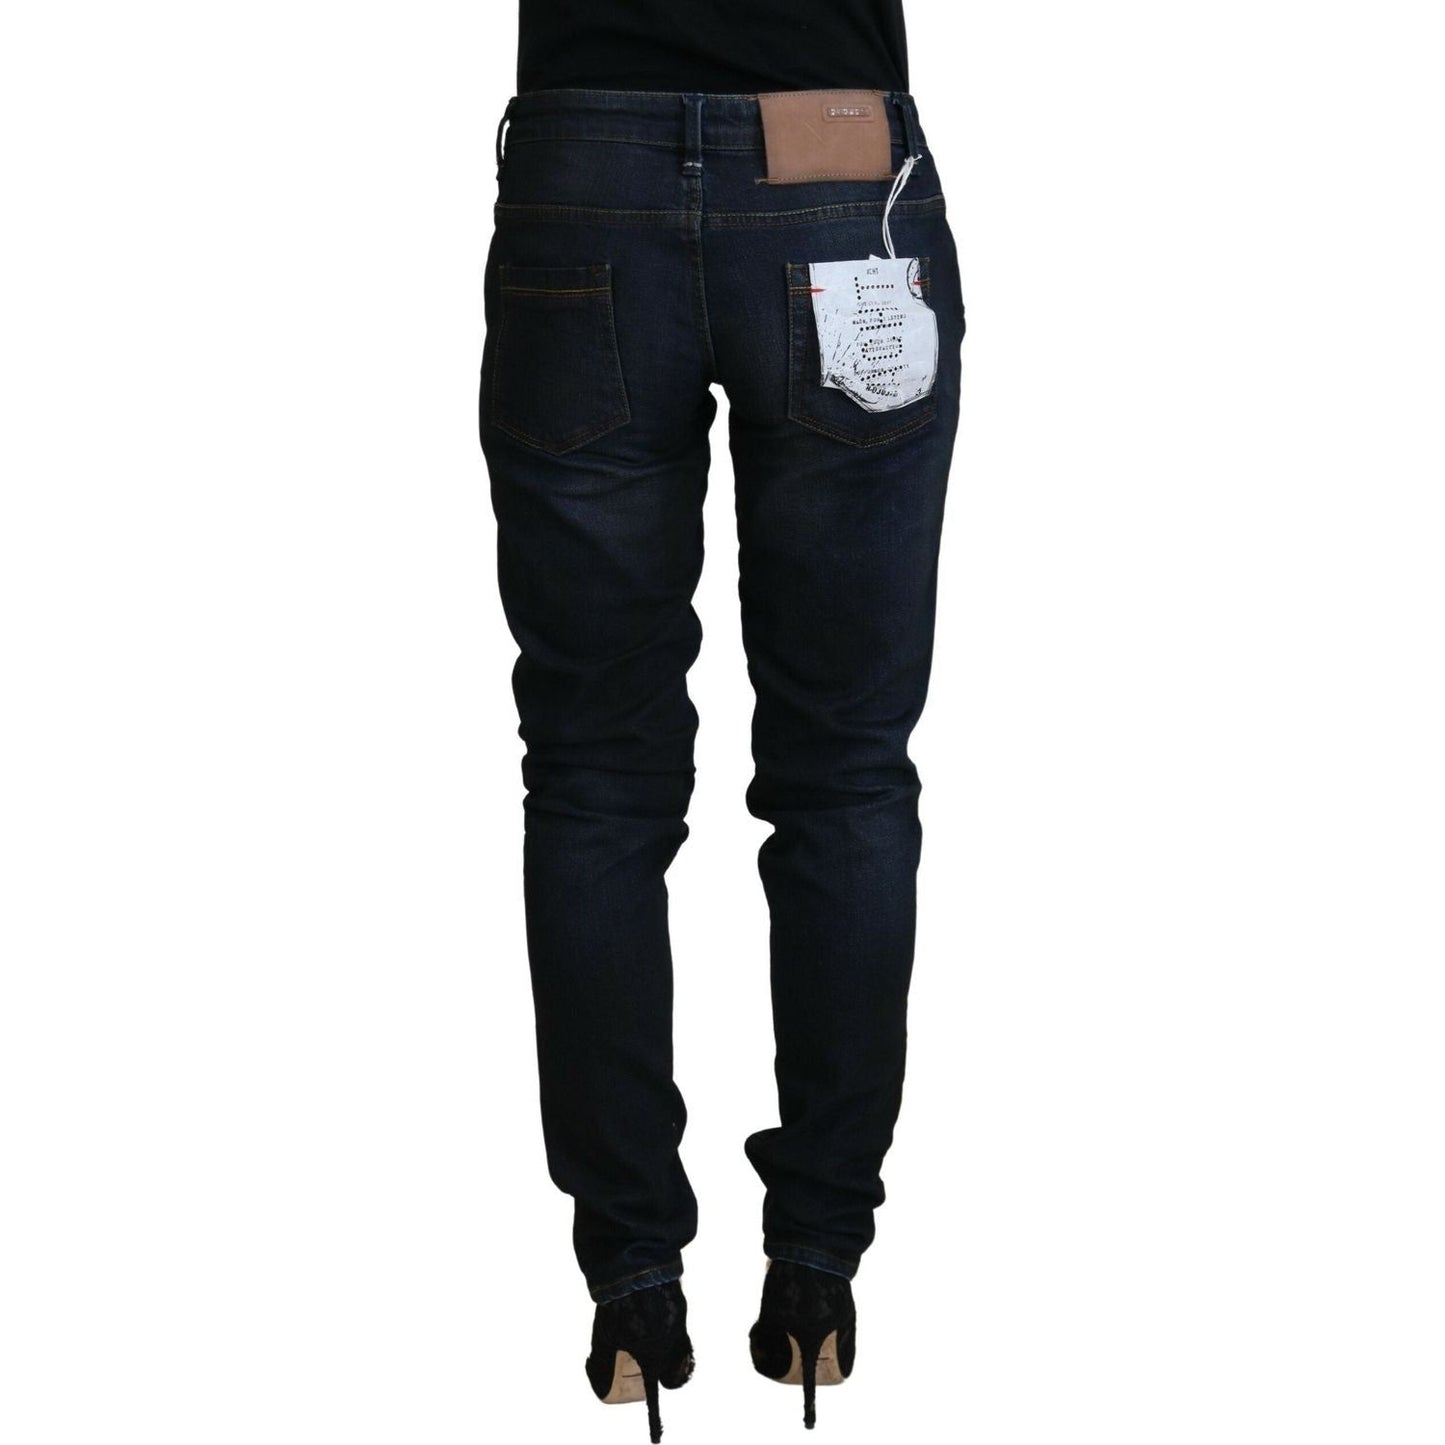 Acht Chic Low Waist Denim Skinny Jeans blue-cotton-skinny-low-waist-women-casual-denim-jeans